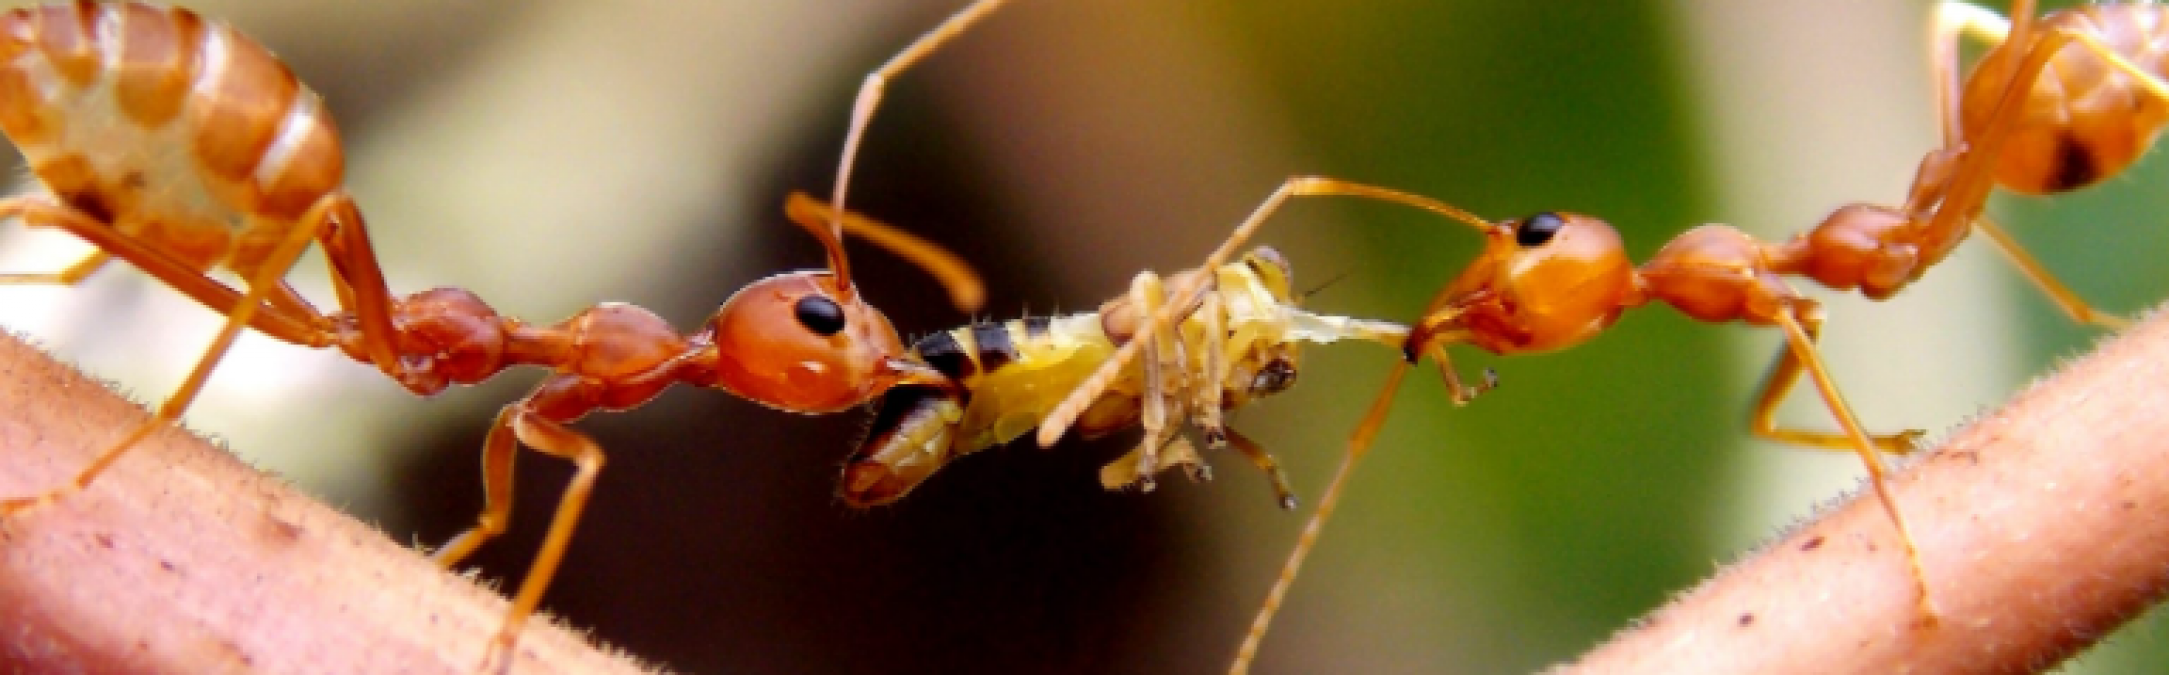 ये है दुनिया की सबसे खतरनाक चींटी, काट ले तो जा सकती है जान